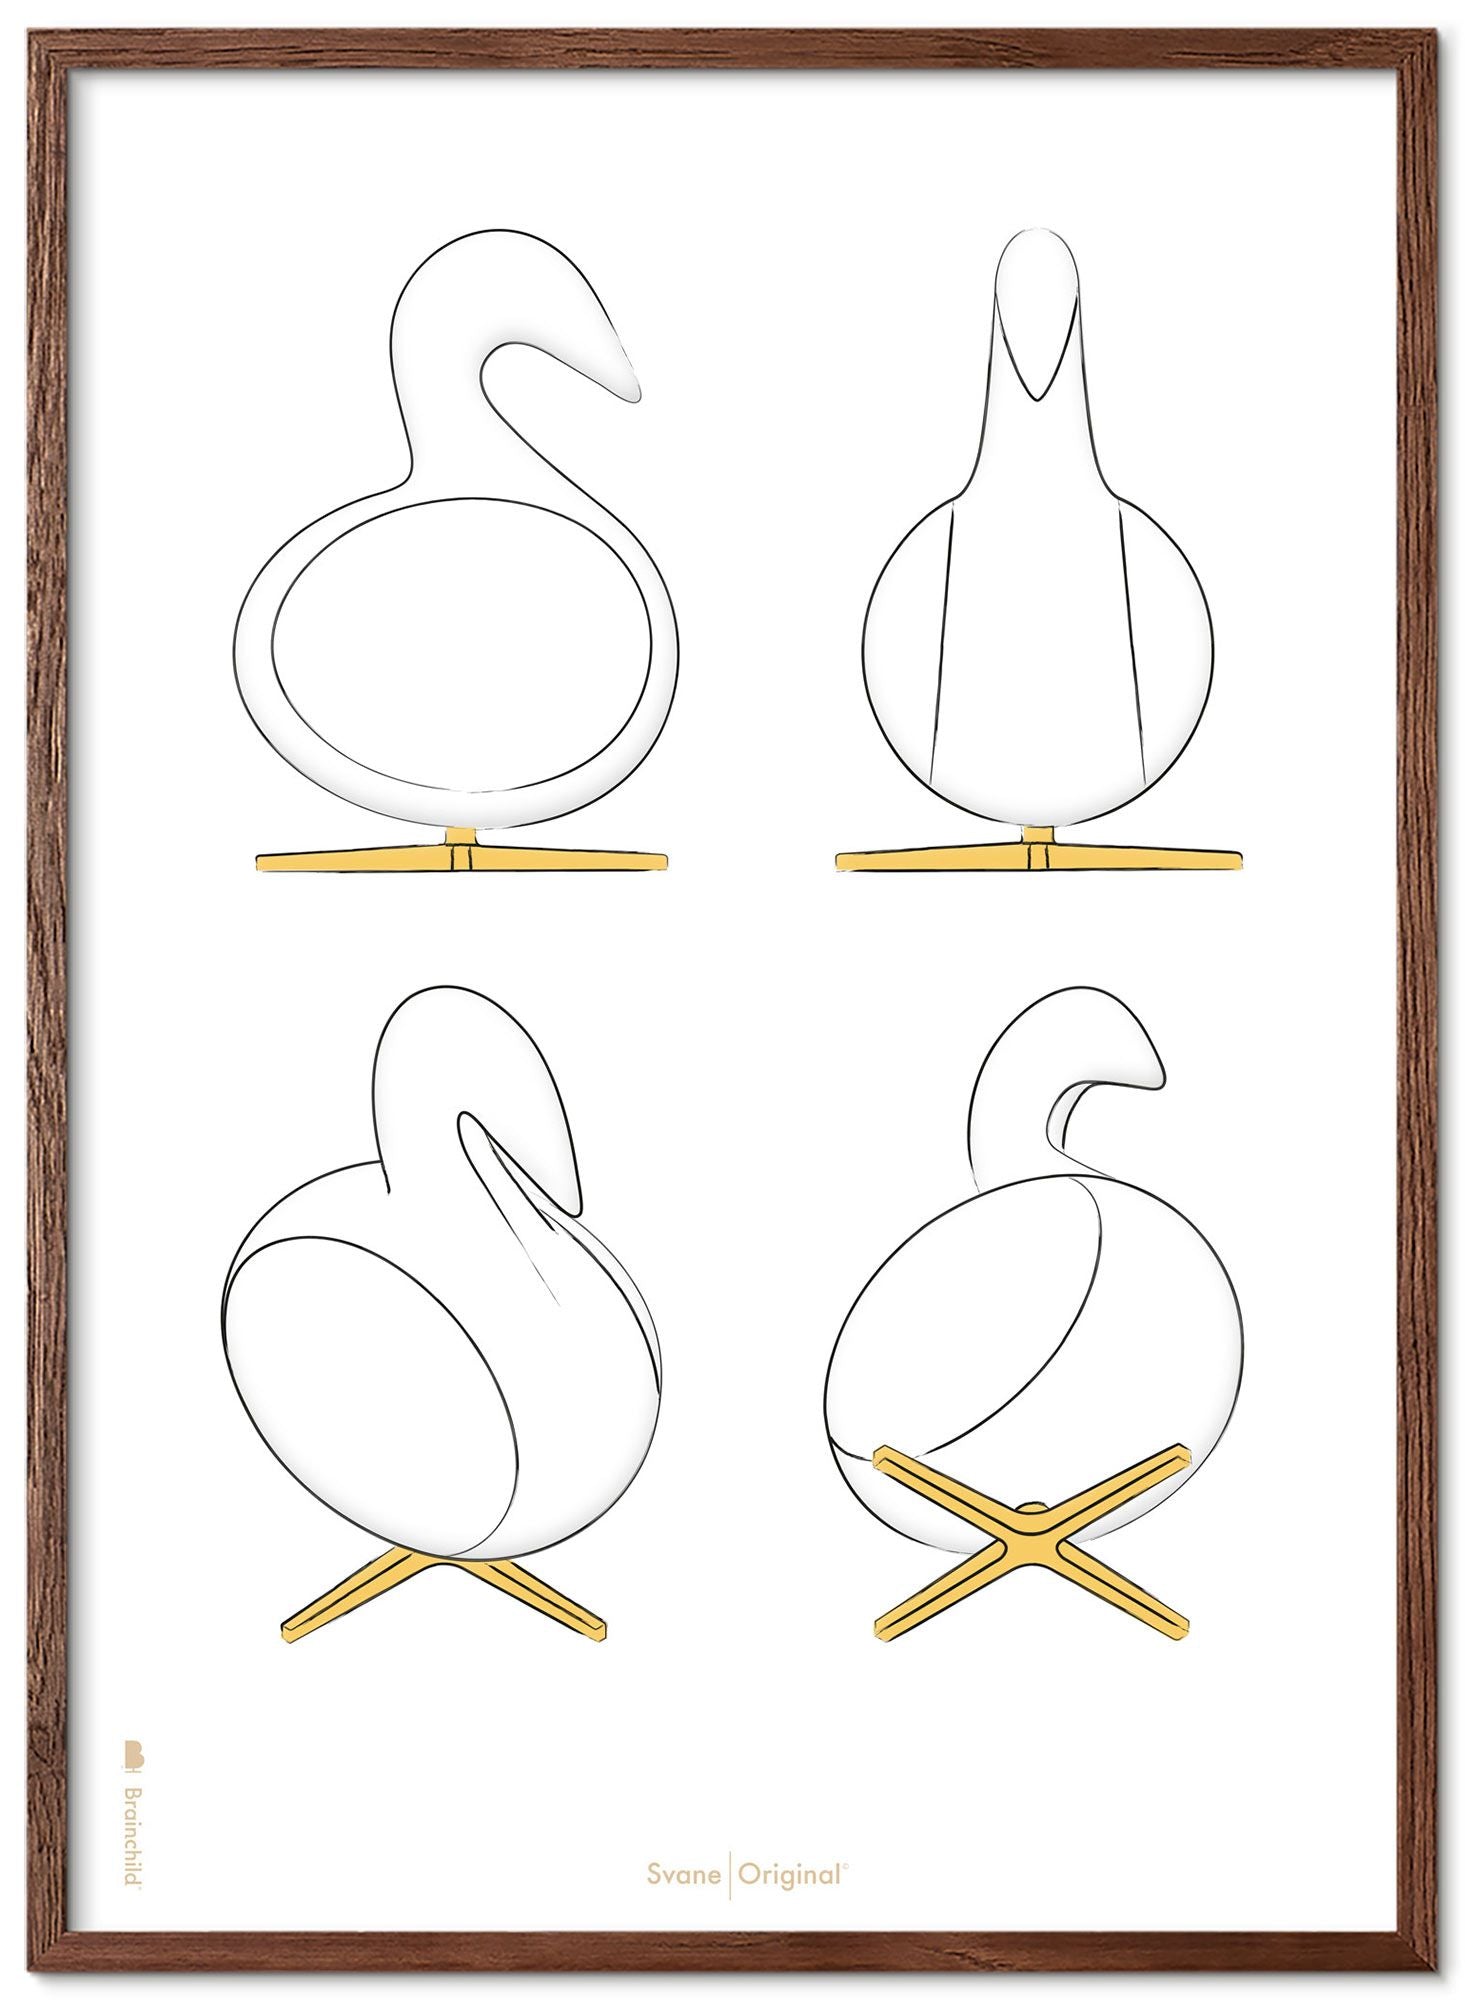 Brainchild Swan Design Sketches Poster Frame lavet af Dark Wood 50x70 cm, hvid baggrund